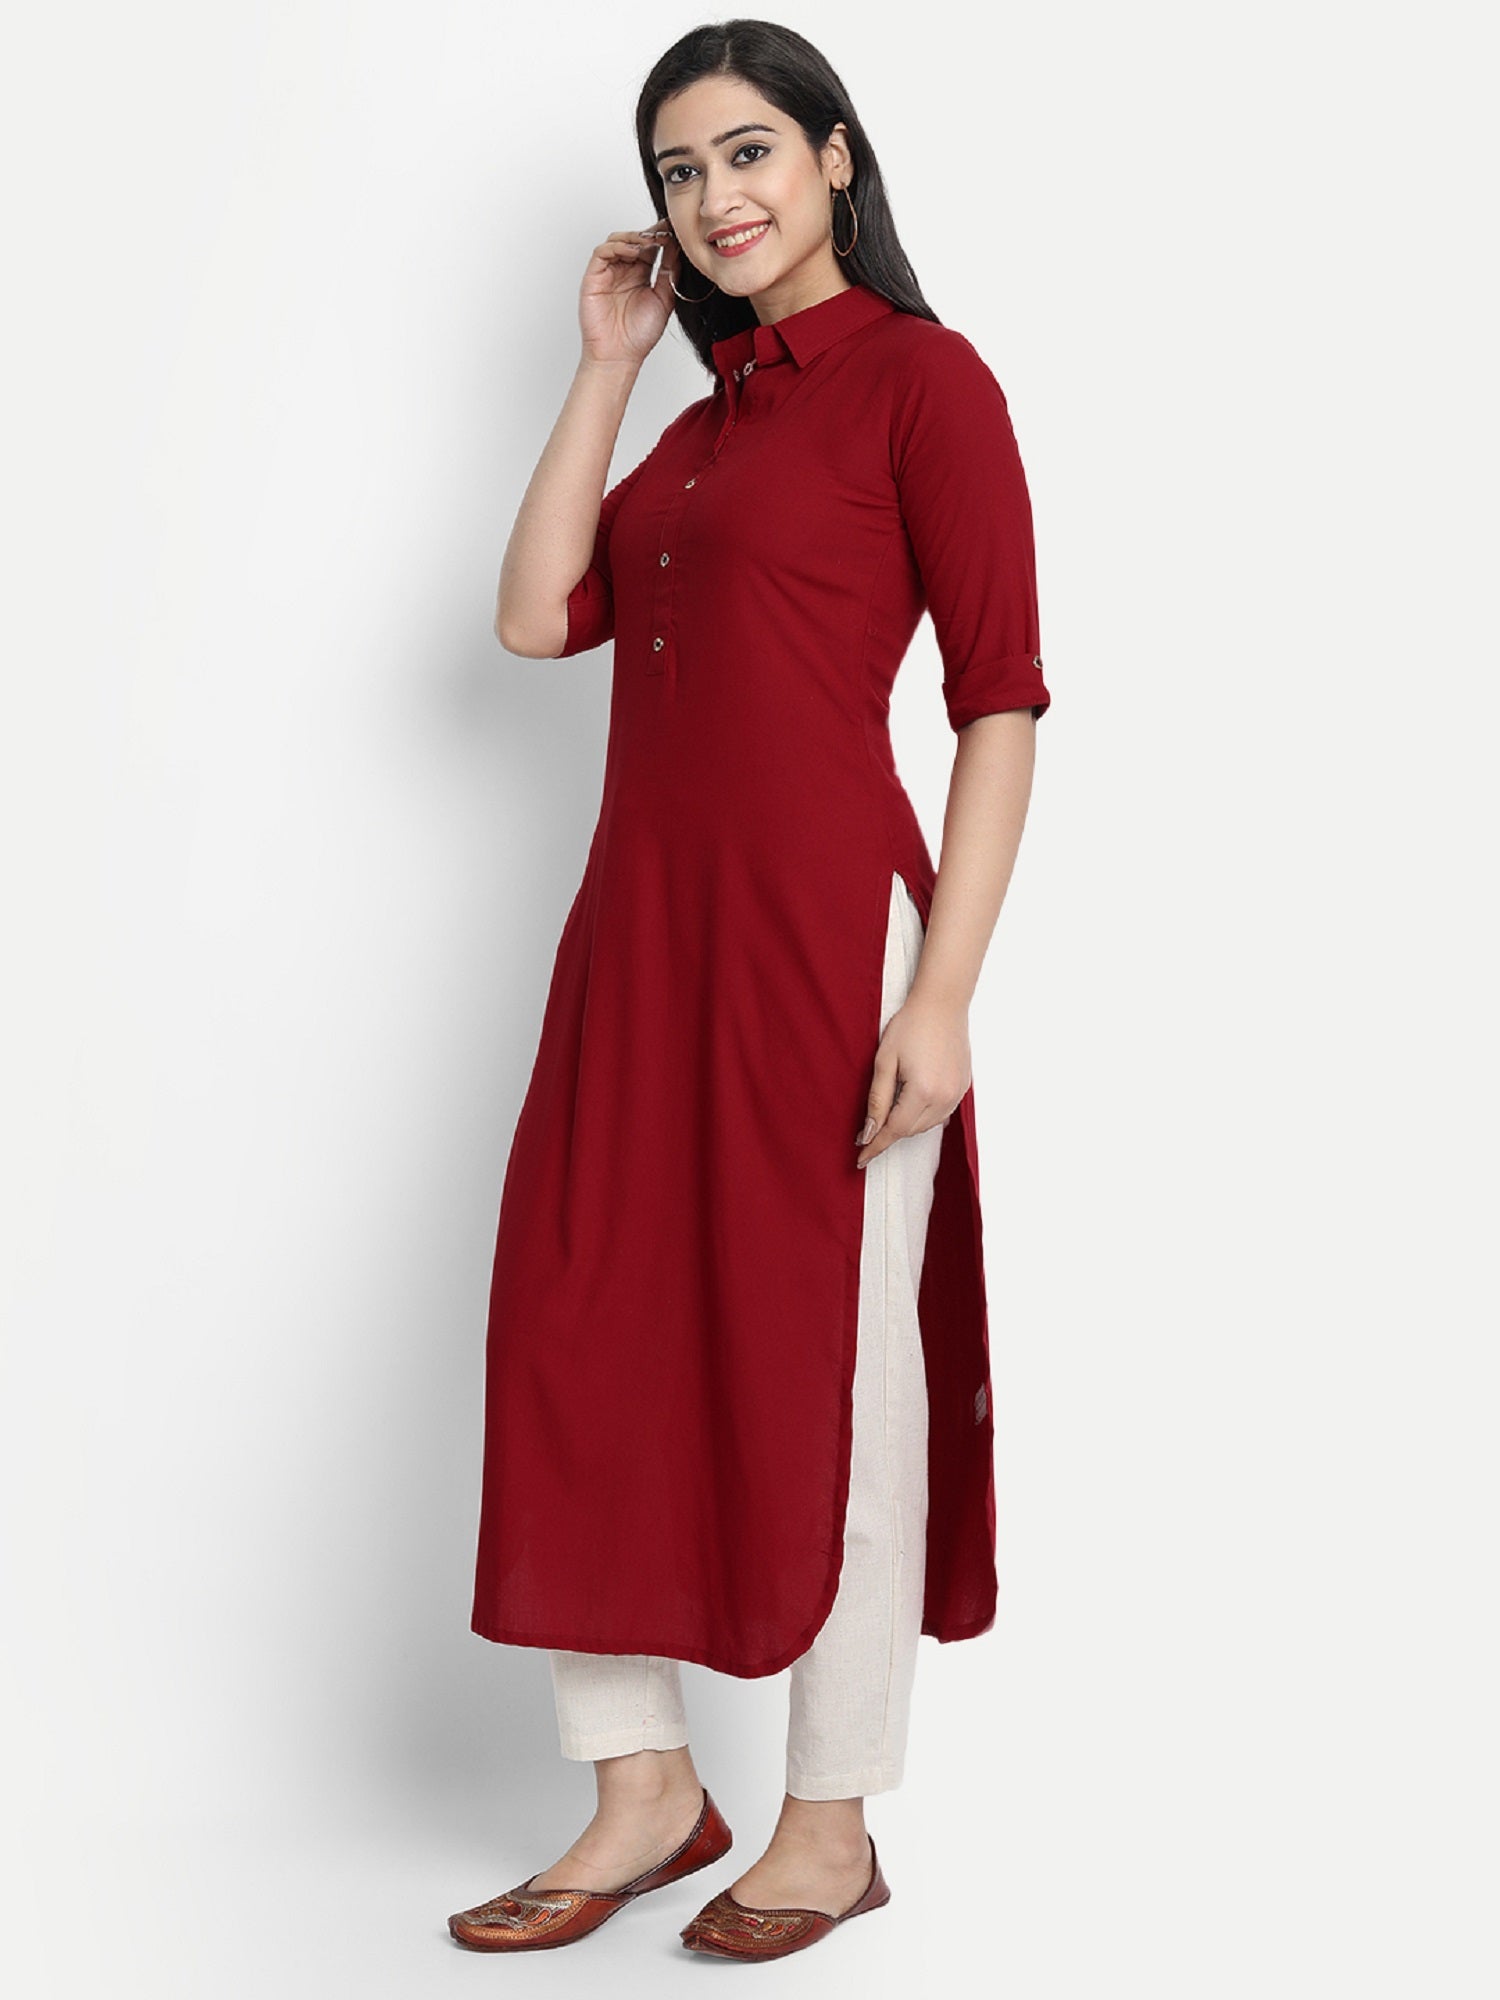 Women's Red Plain Kurta - Dwija Fashion